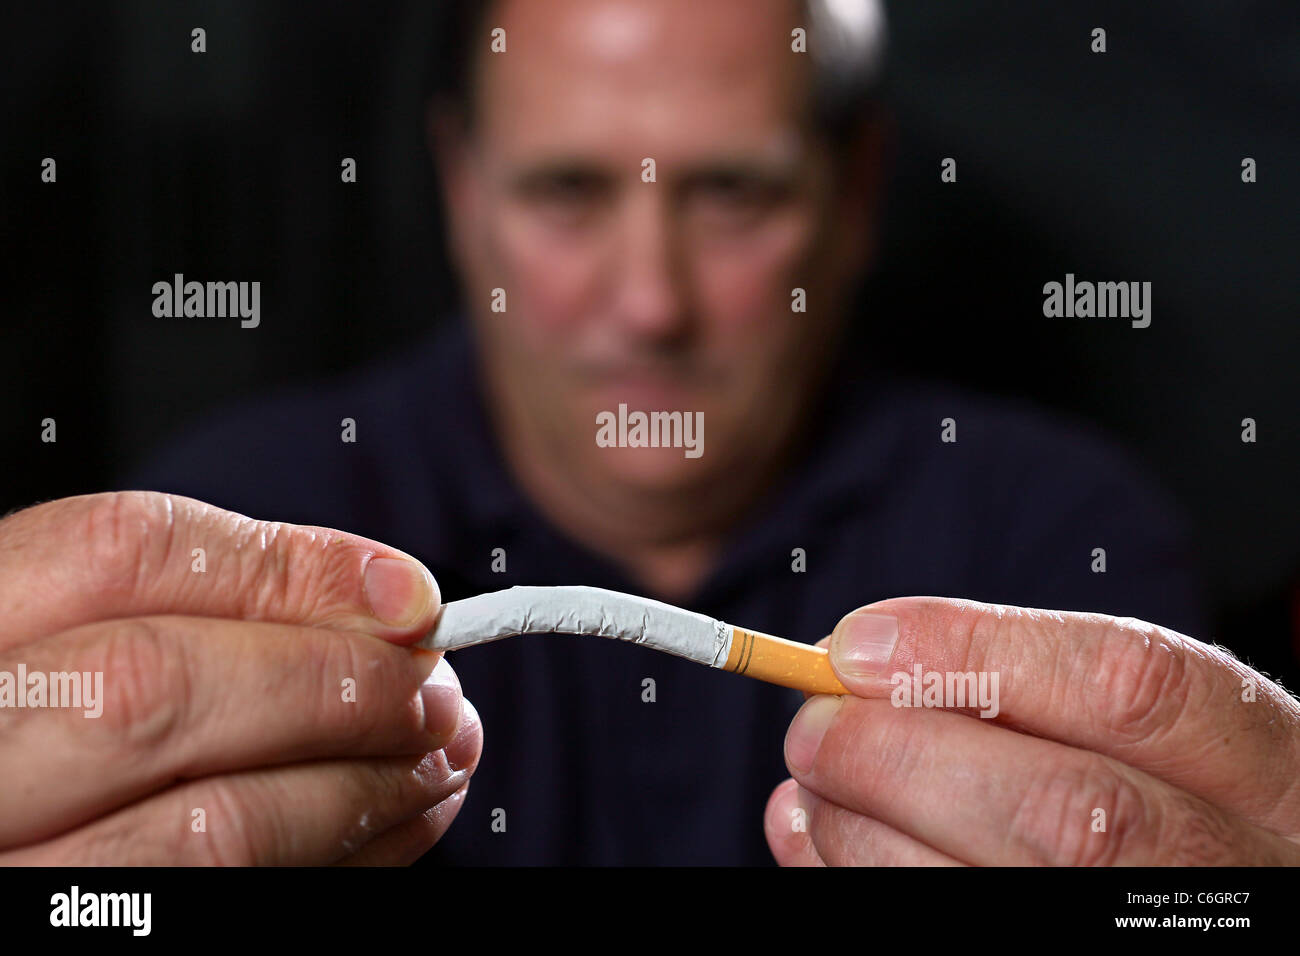 Illustration on breaking the smoking habit. Stock Photo